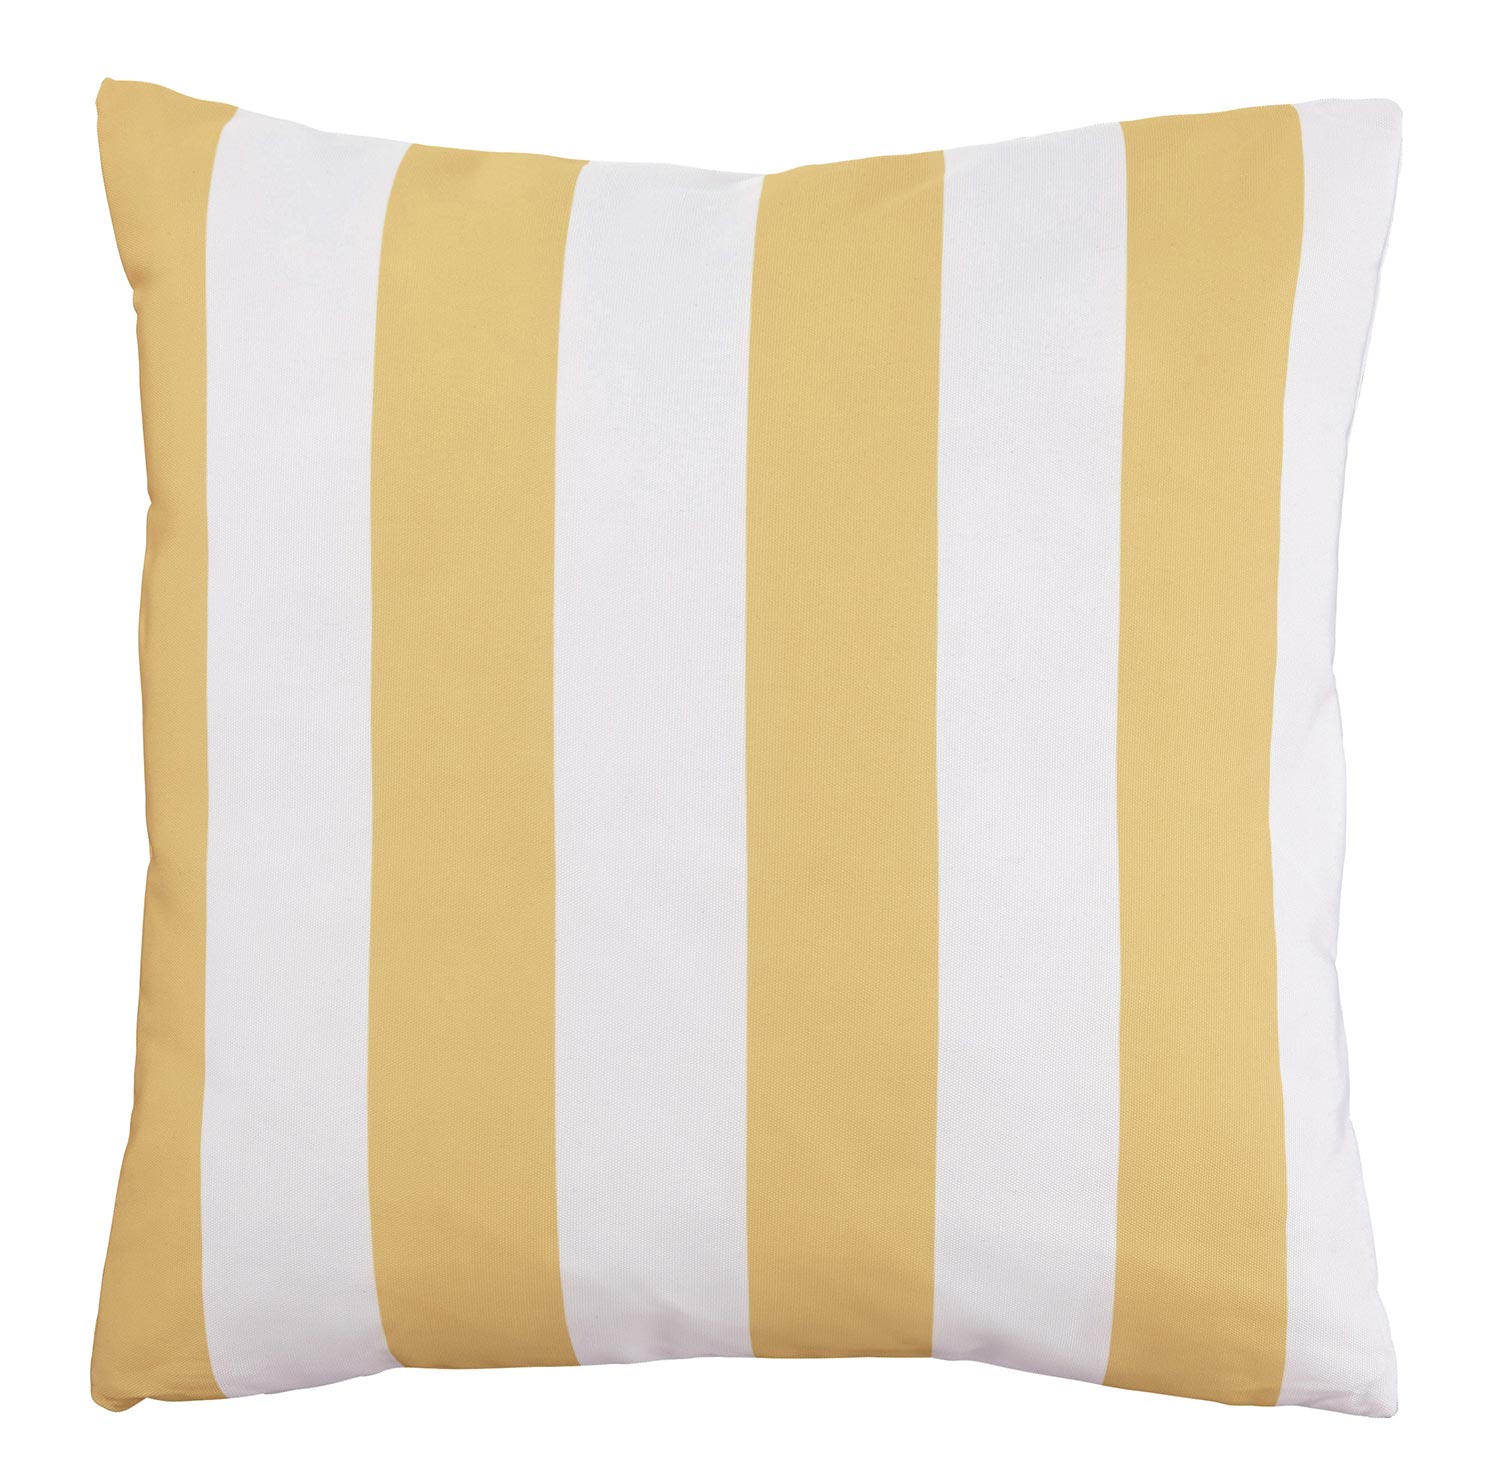 Ashley Hutto Pillow - Set of 4 - Yellow/White